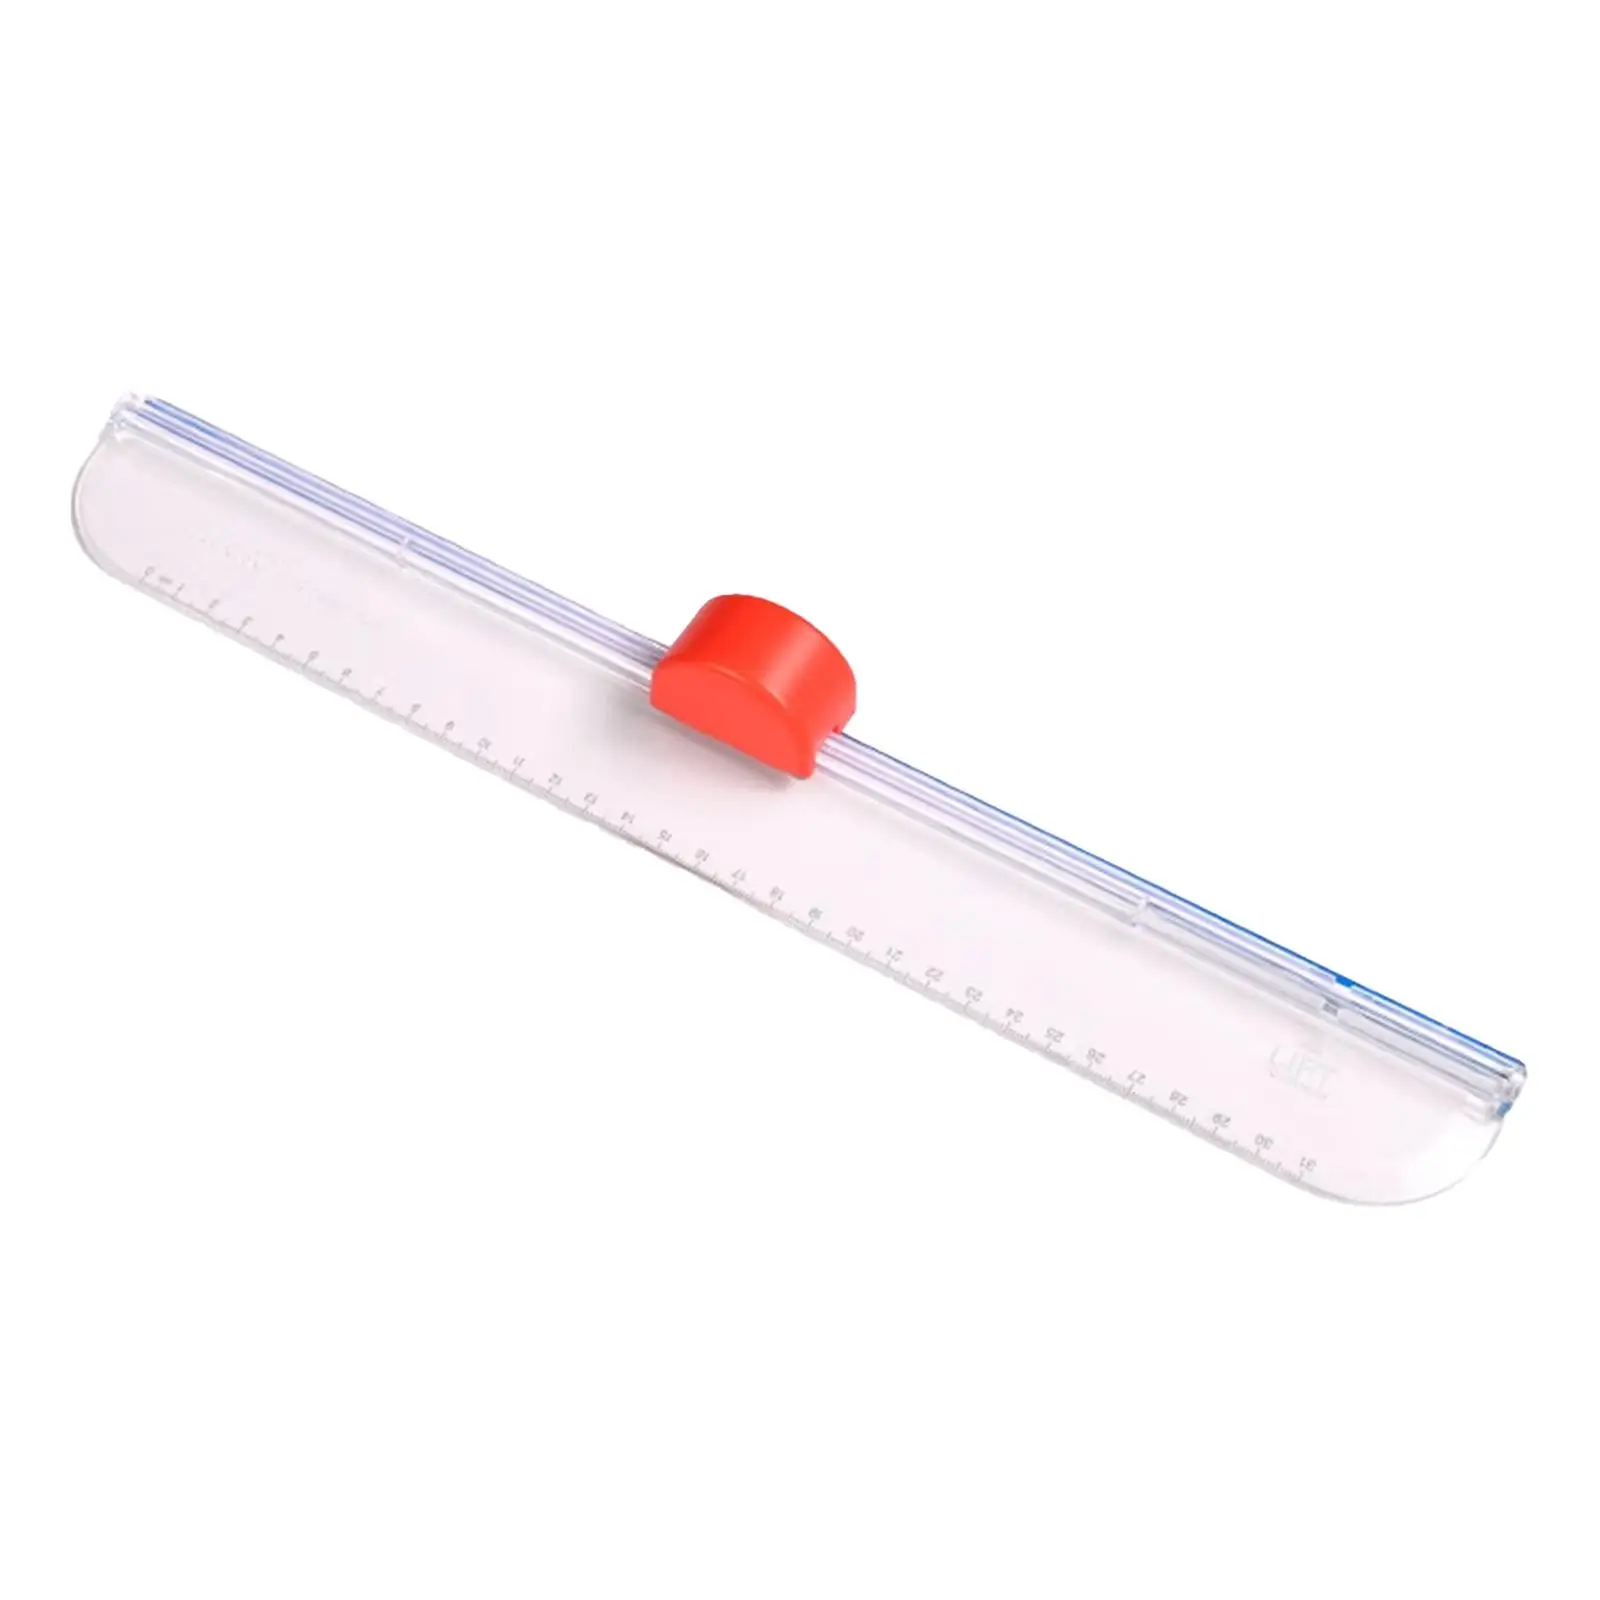 Mini Paper Cutter Ruler Lightweight Straight Line Convenient Paper Cutting